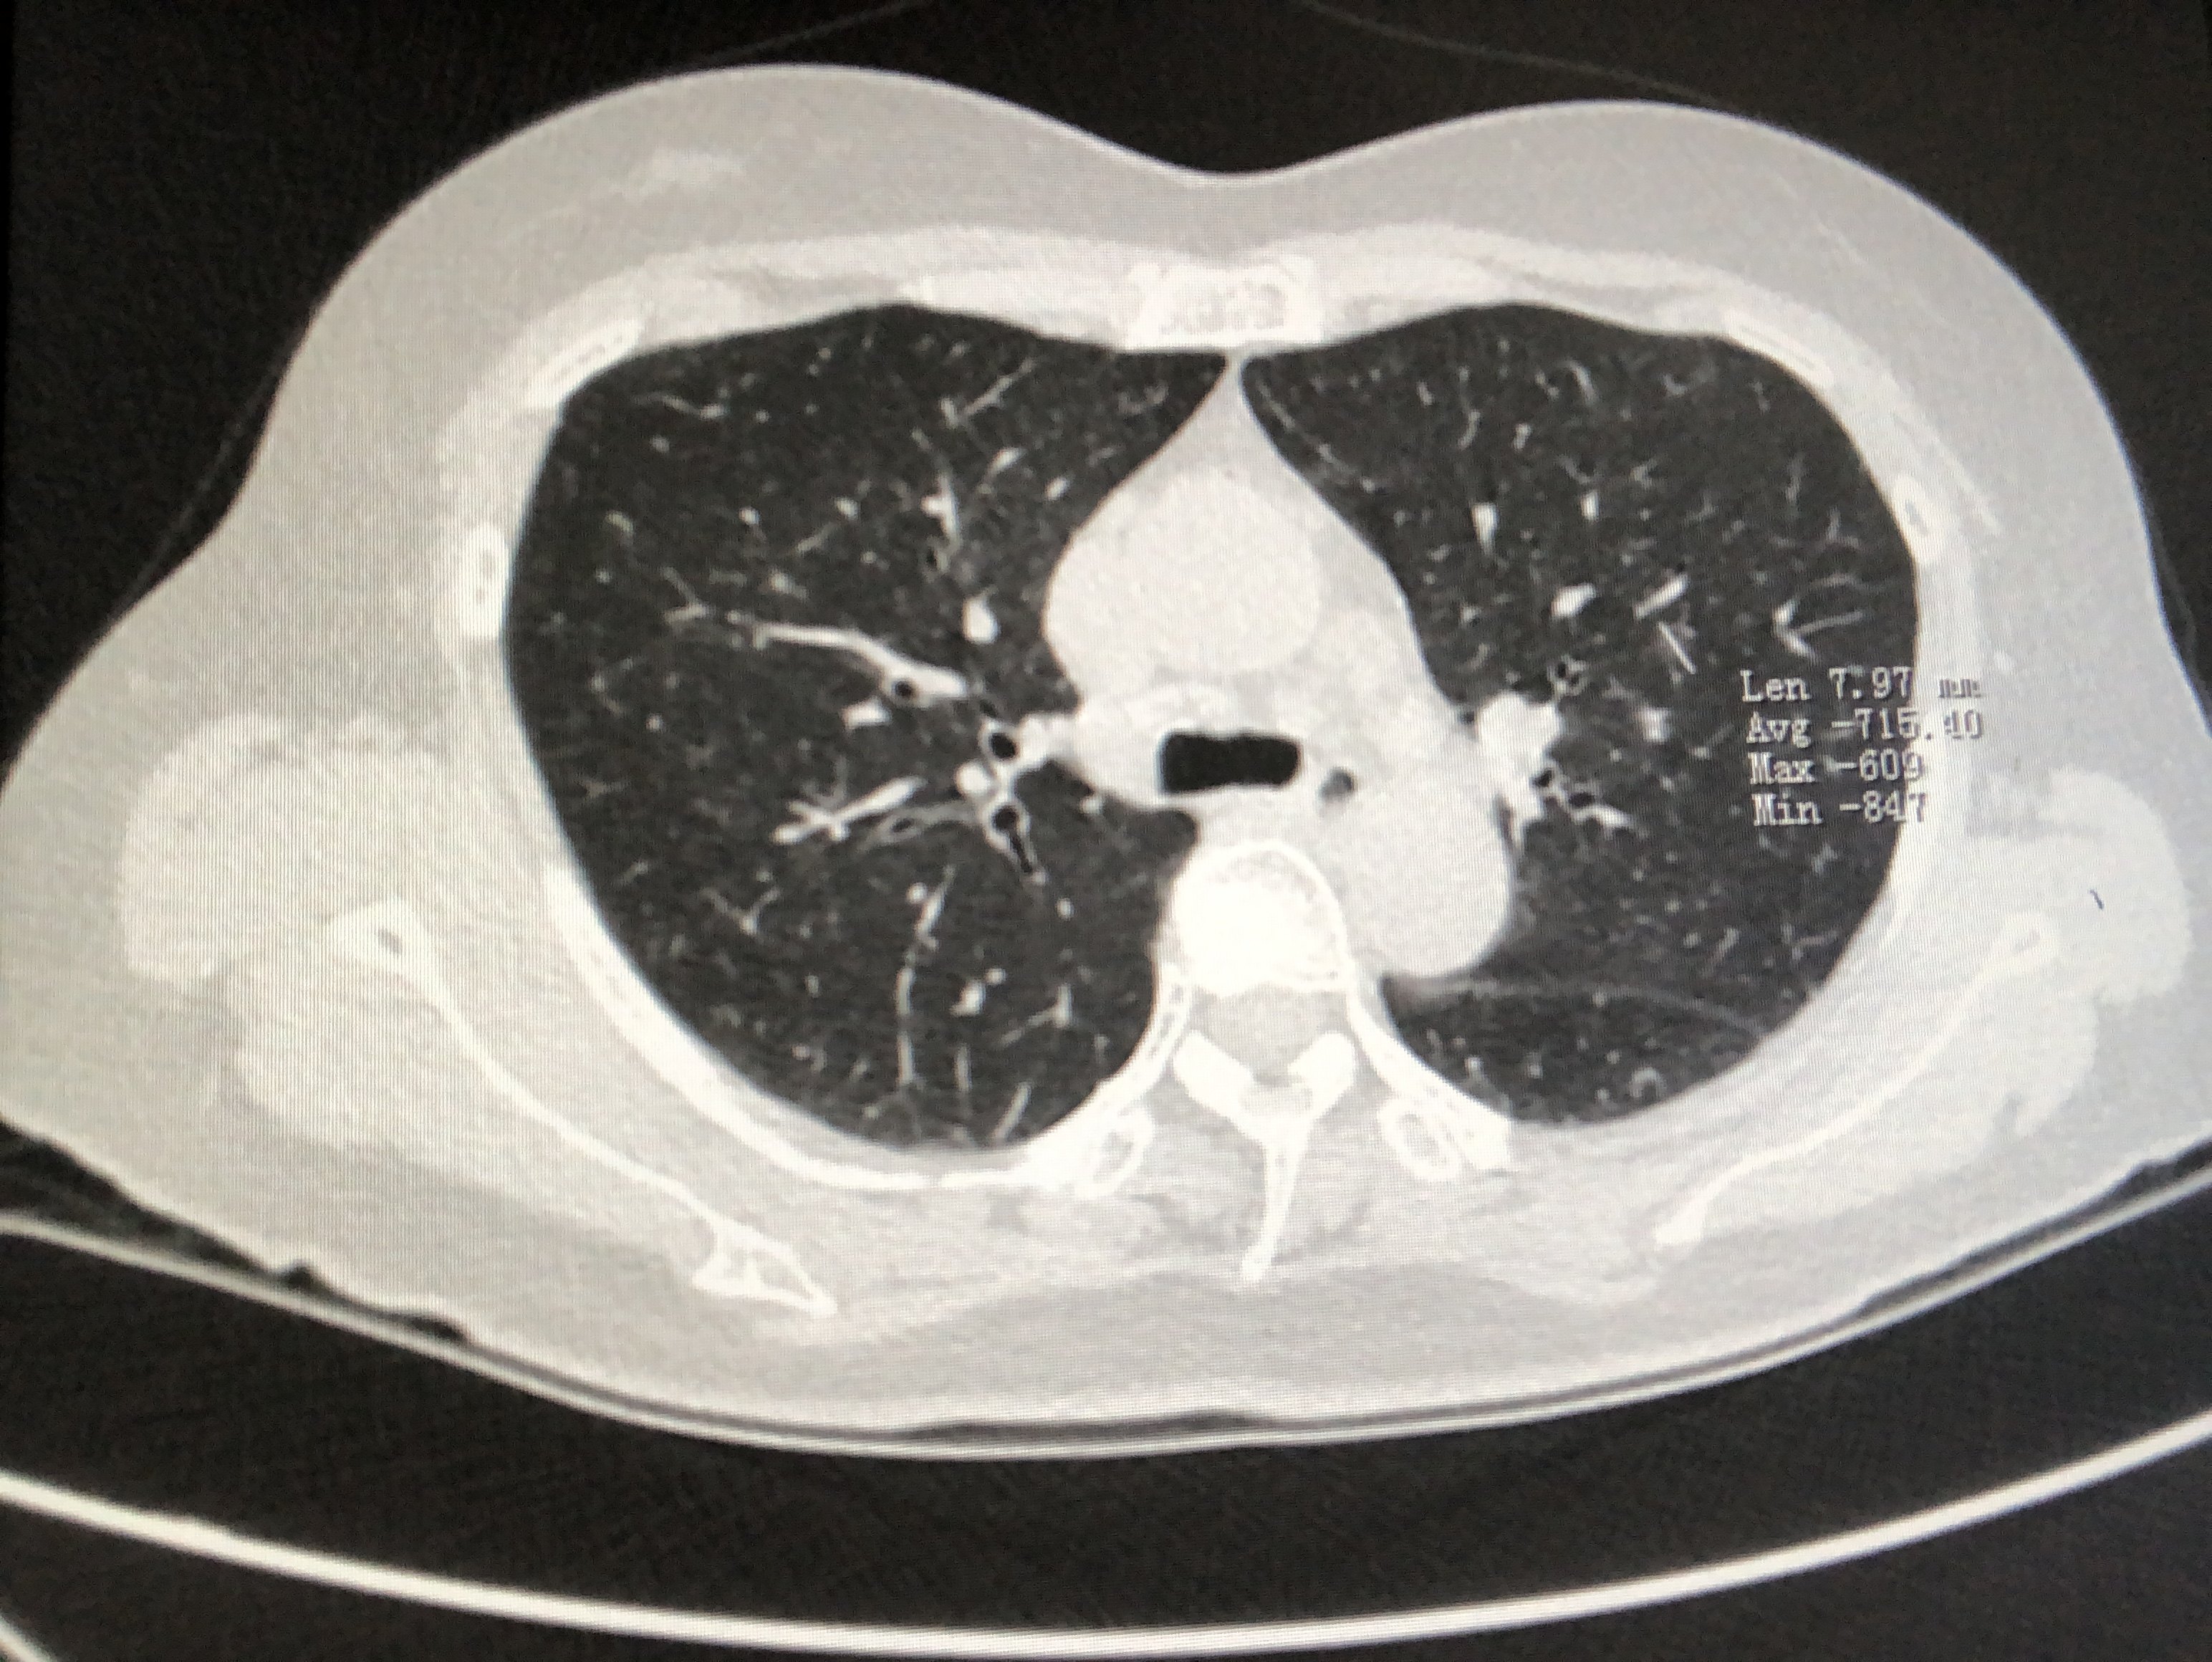 肺部结节图片查看图片